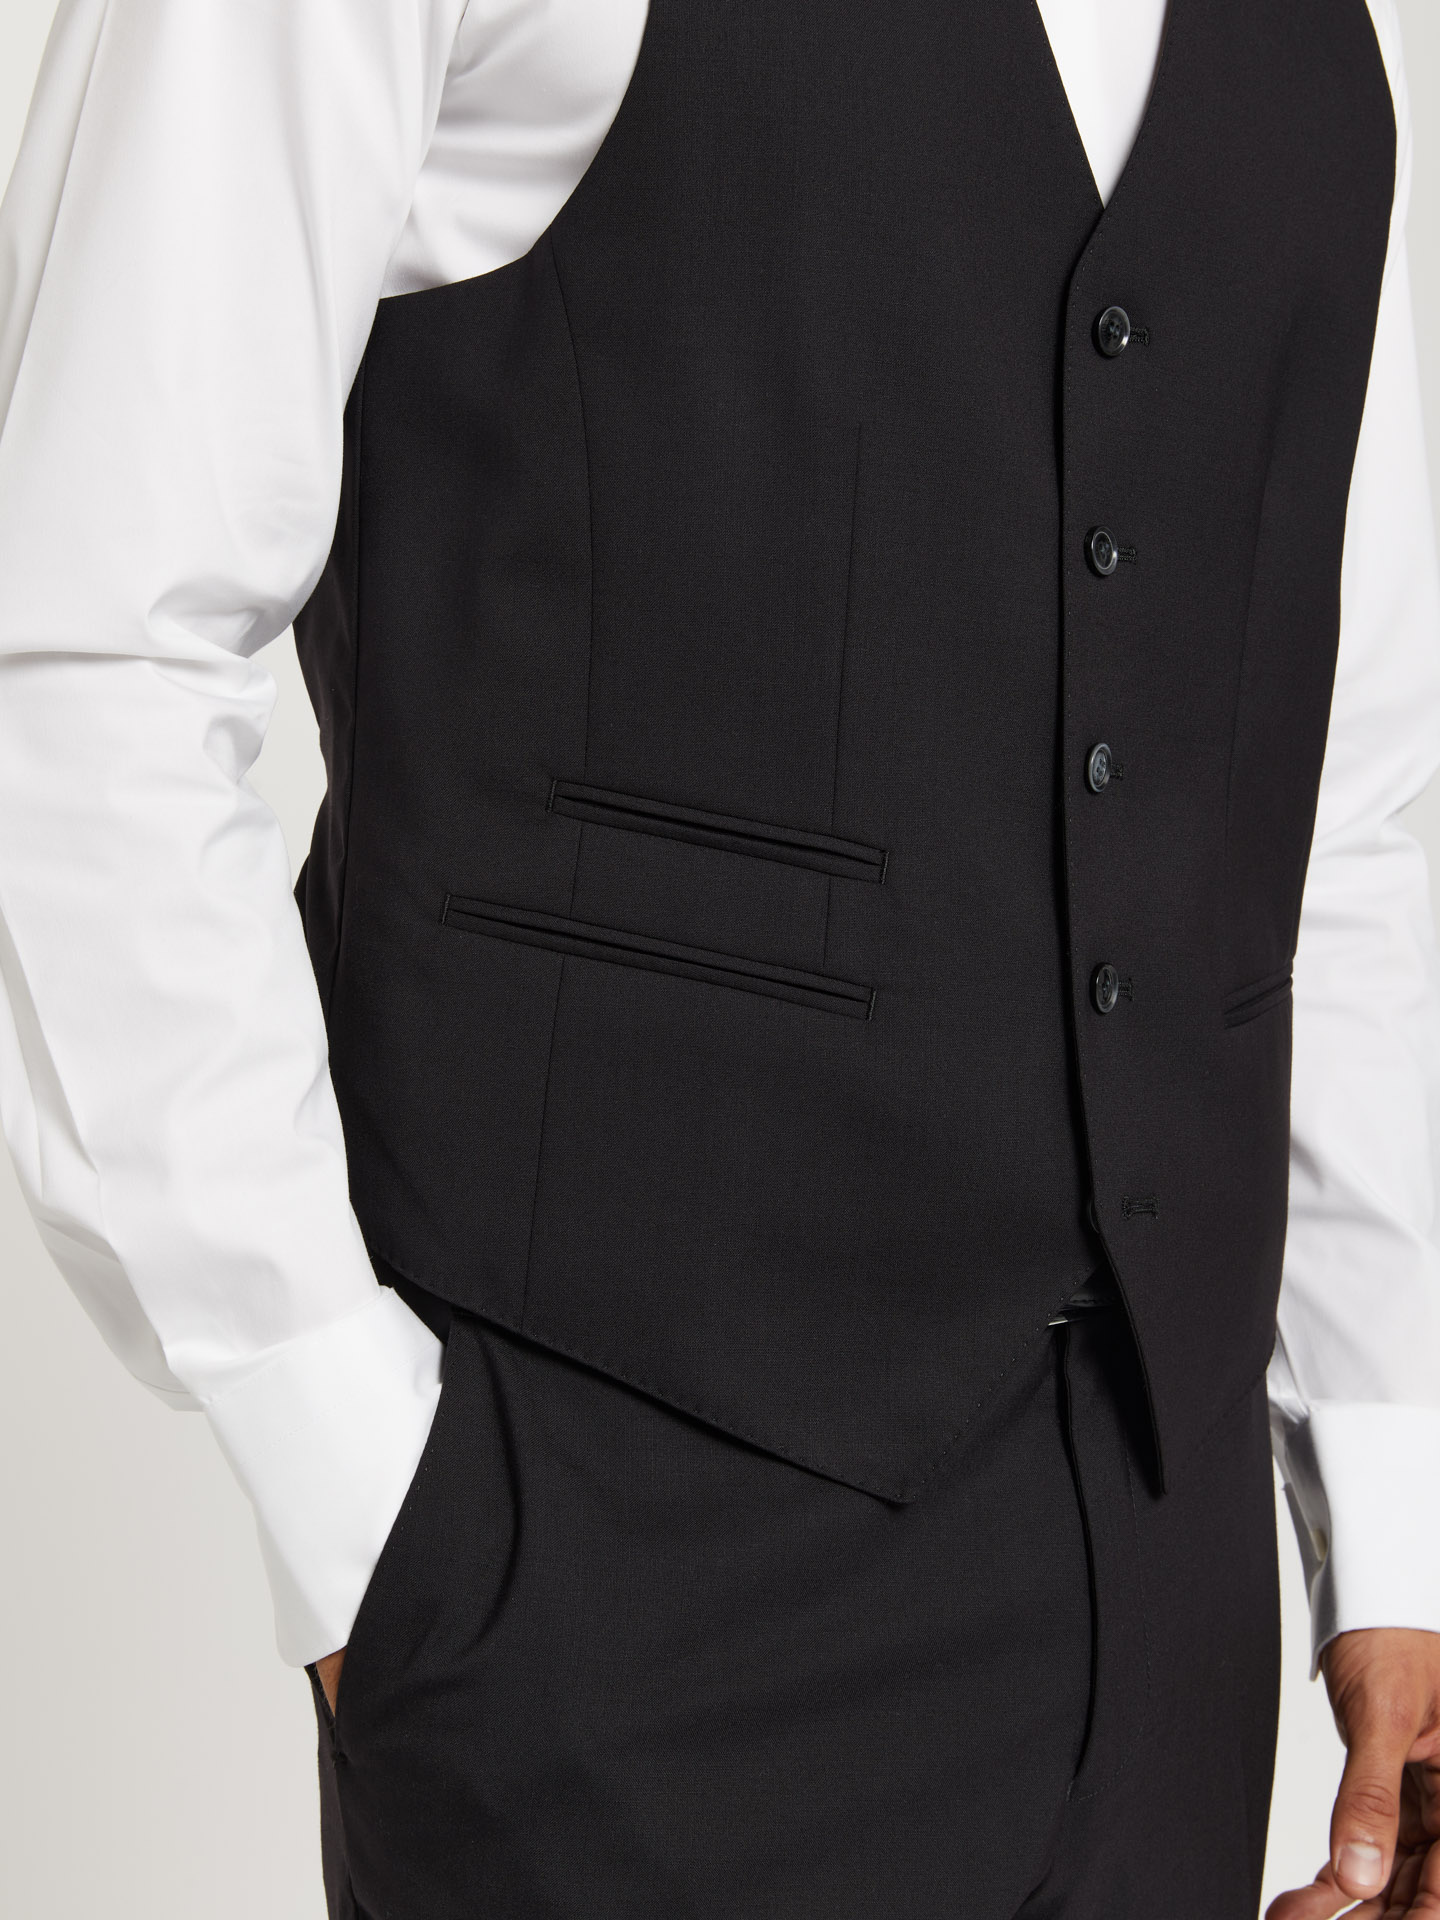 Suit Vest Black Casual Man